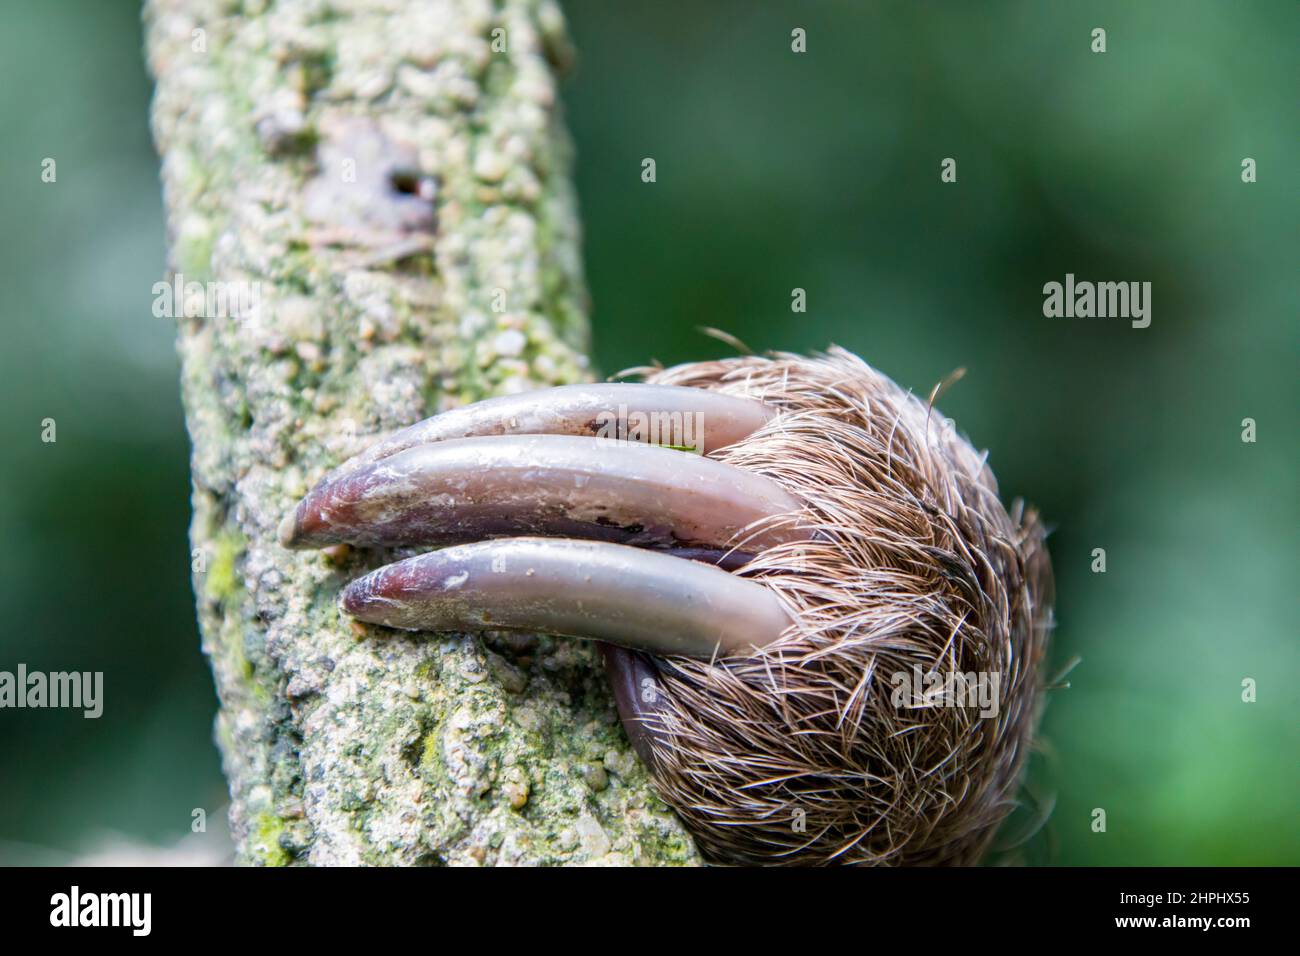 Las patas traseras se aferran a la Sloth de dos dedos de Linneaus (Choloepus didactylus). Una especie de perezoso de América del Sur, tiene pelo más largo, ojos más grandes Foto de stock